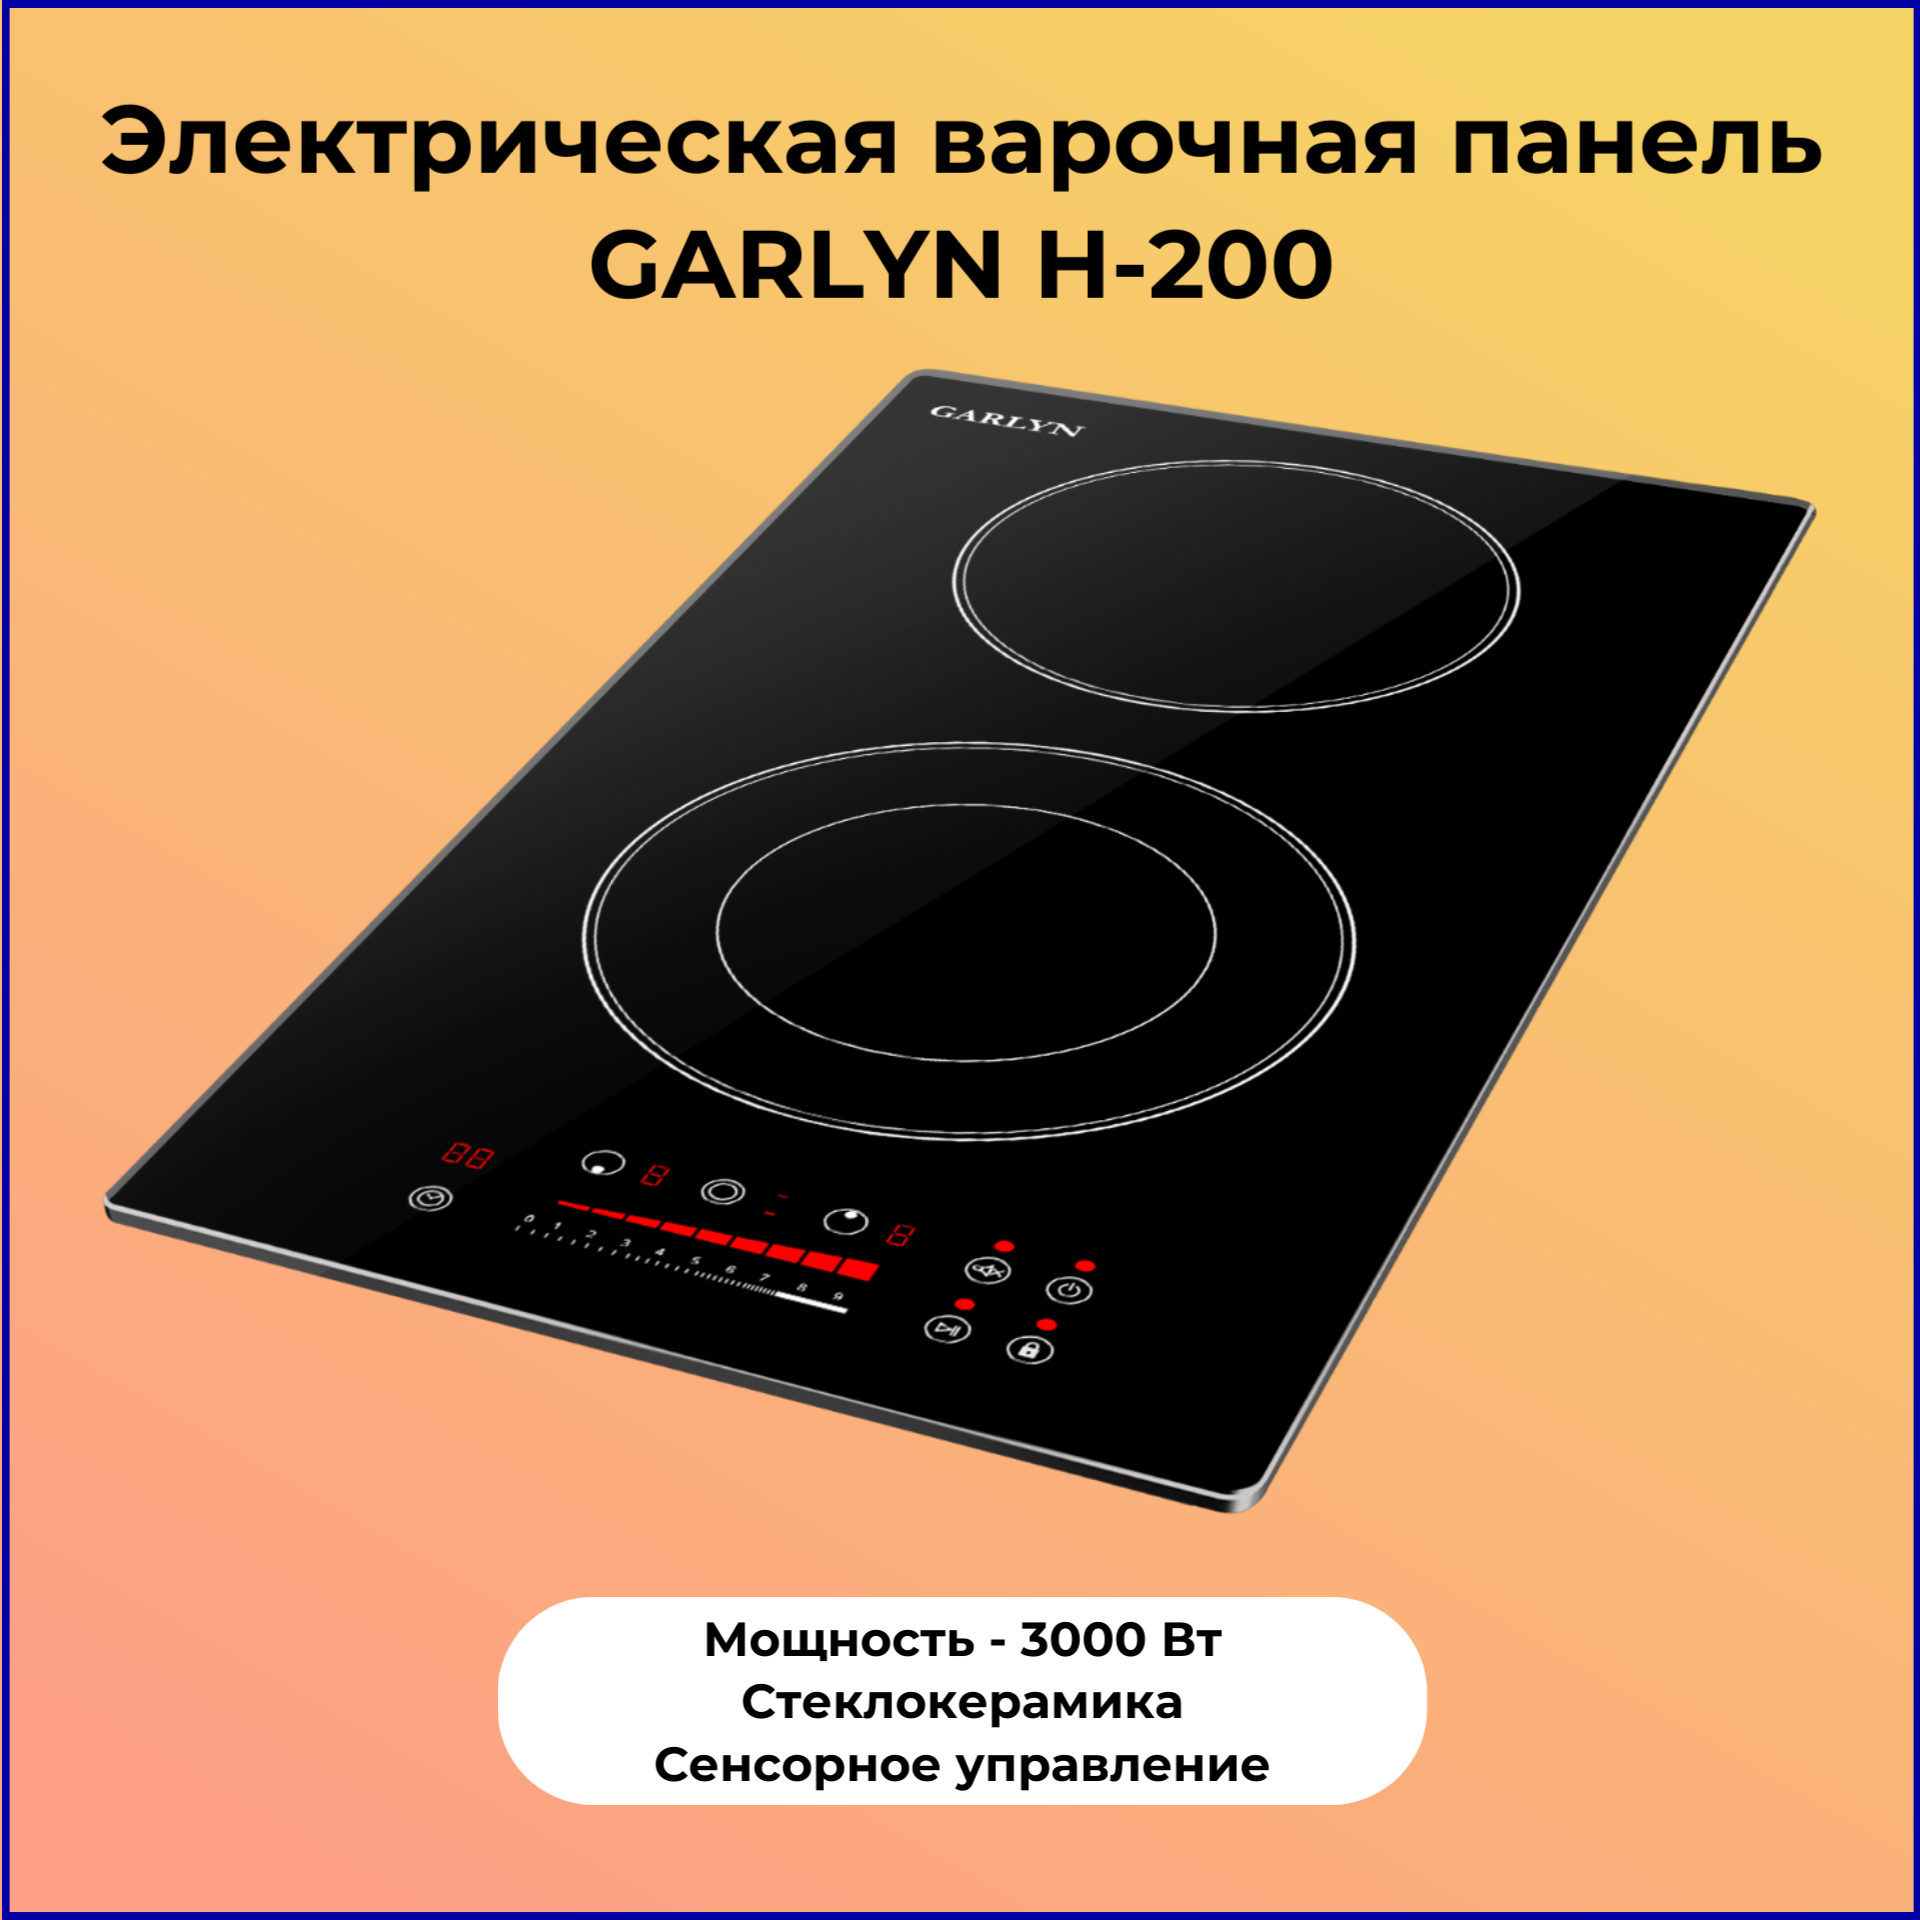 Варочная панель GARLYN H-200